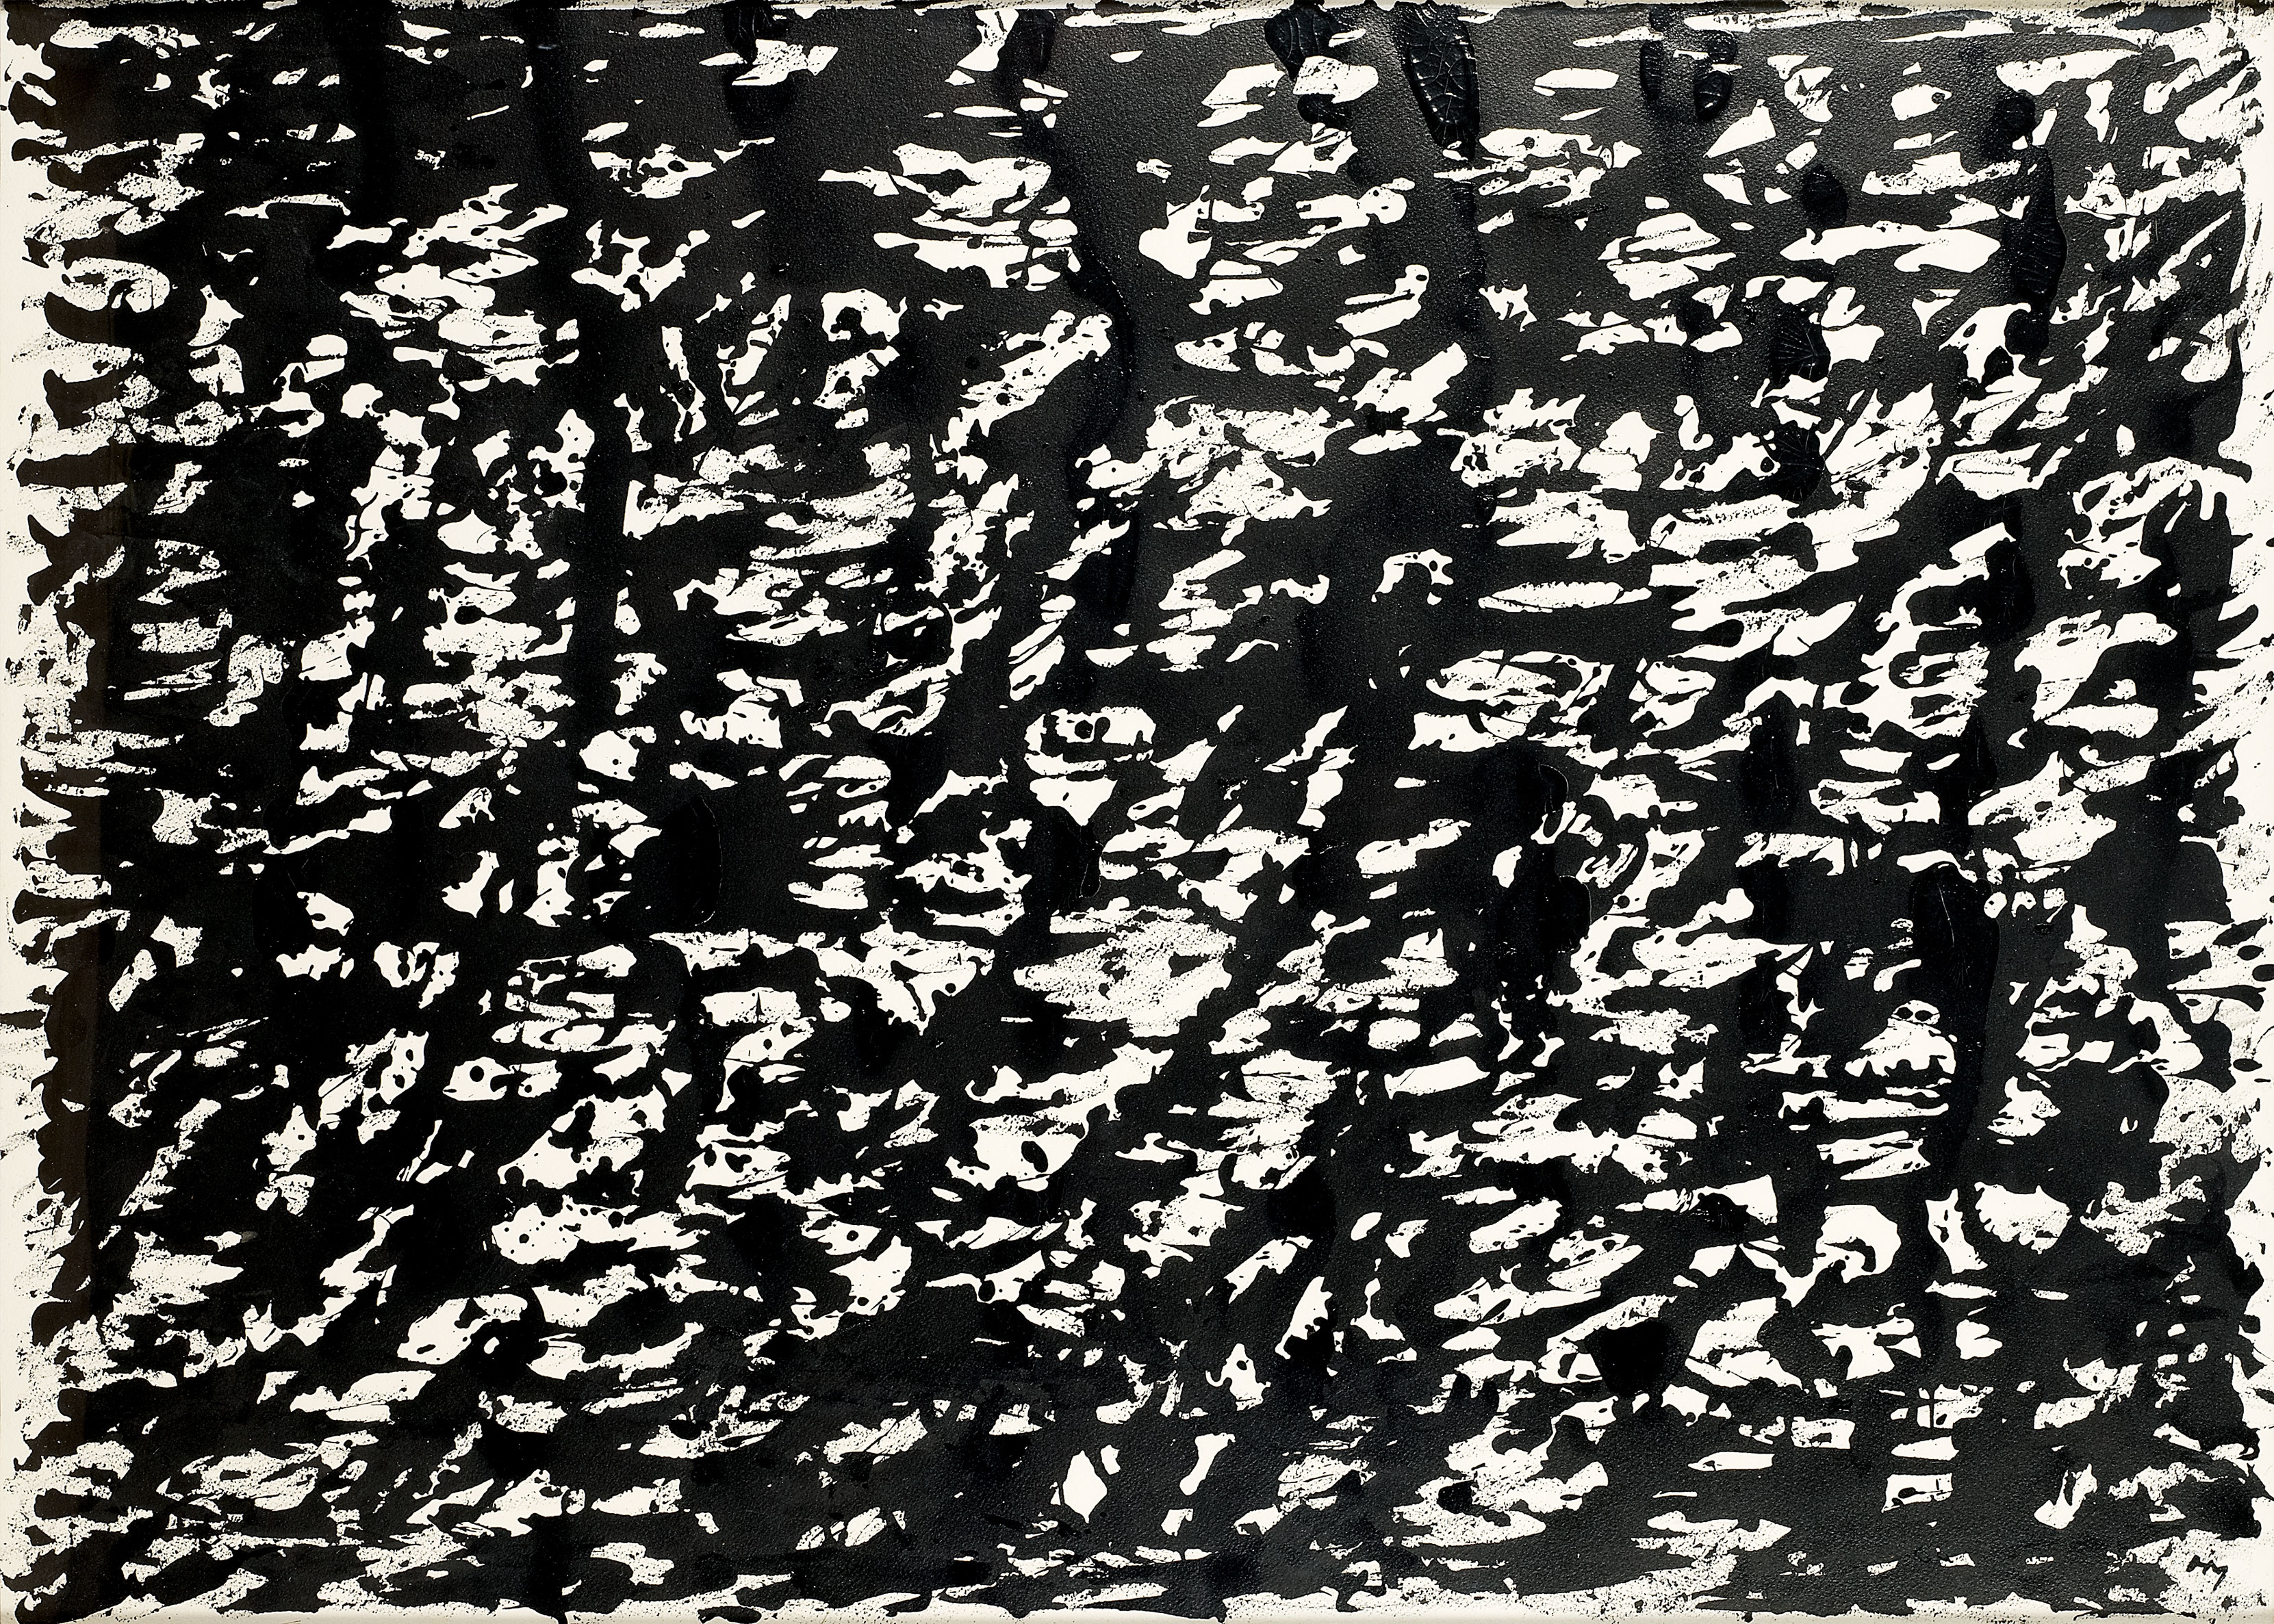 SANS TITRE by Henri Michaux, circa 1959